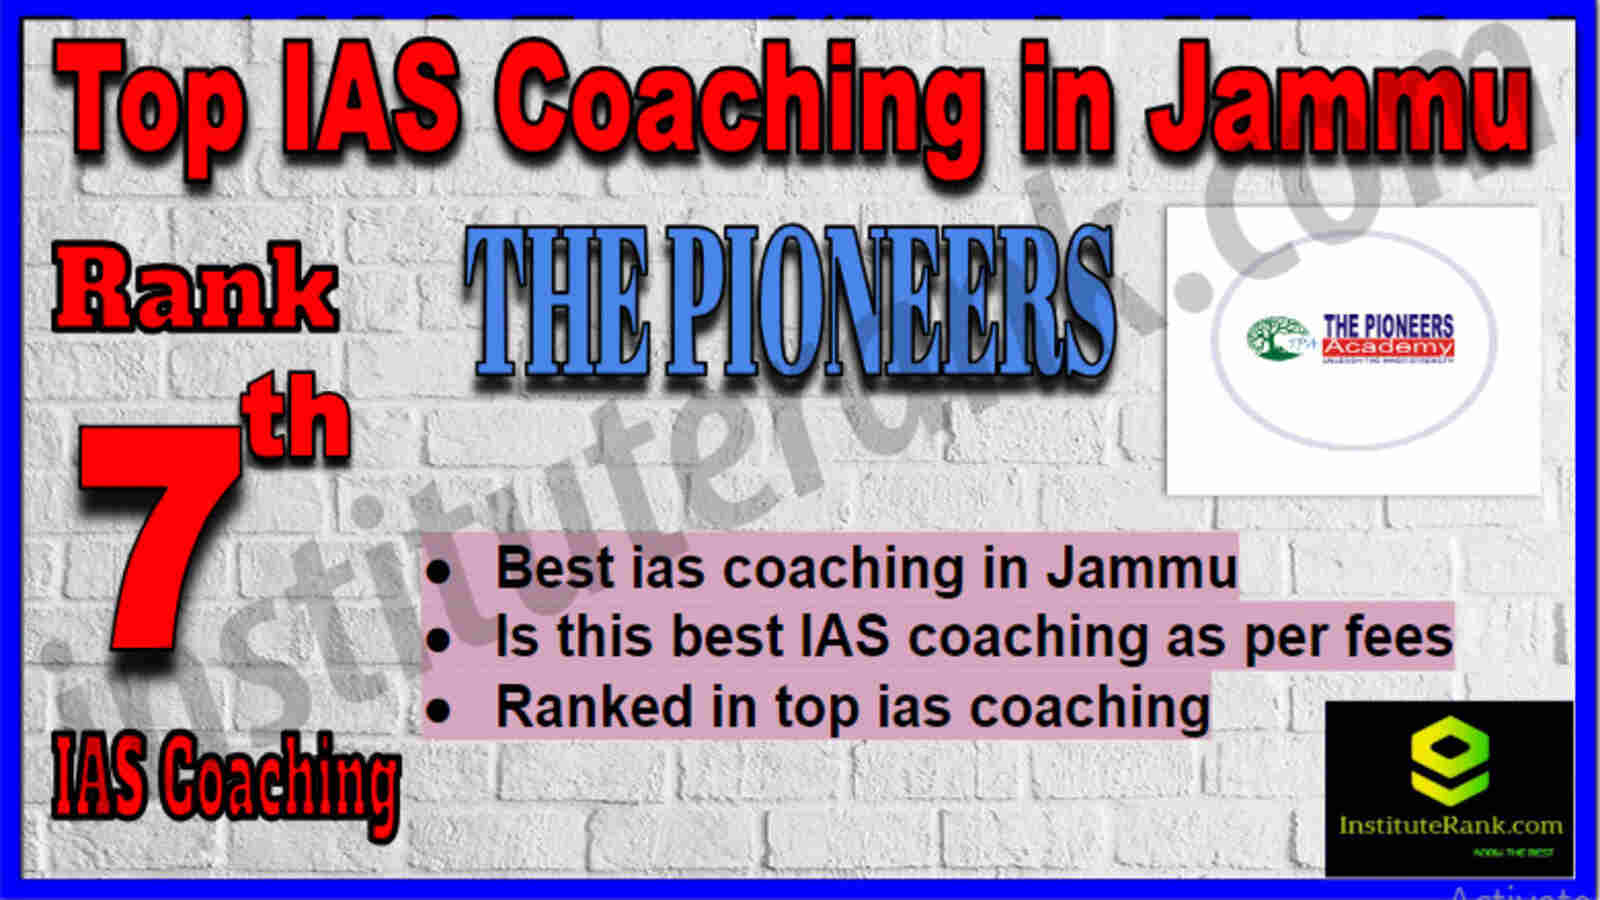 Rank 7 Top IAS Coaching in Jammu